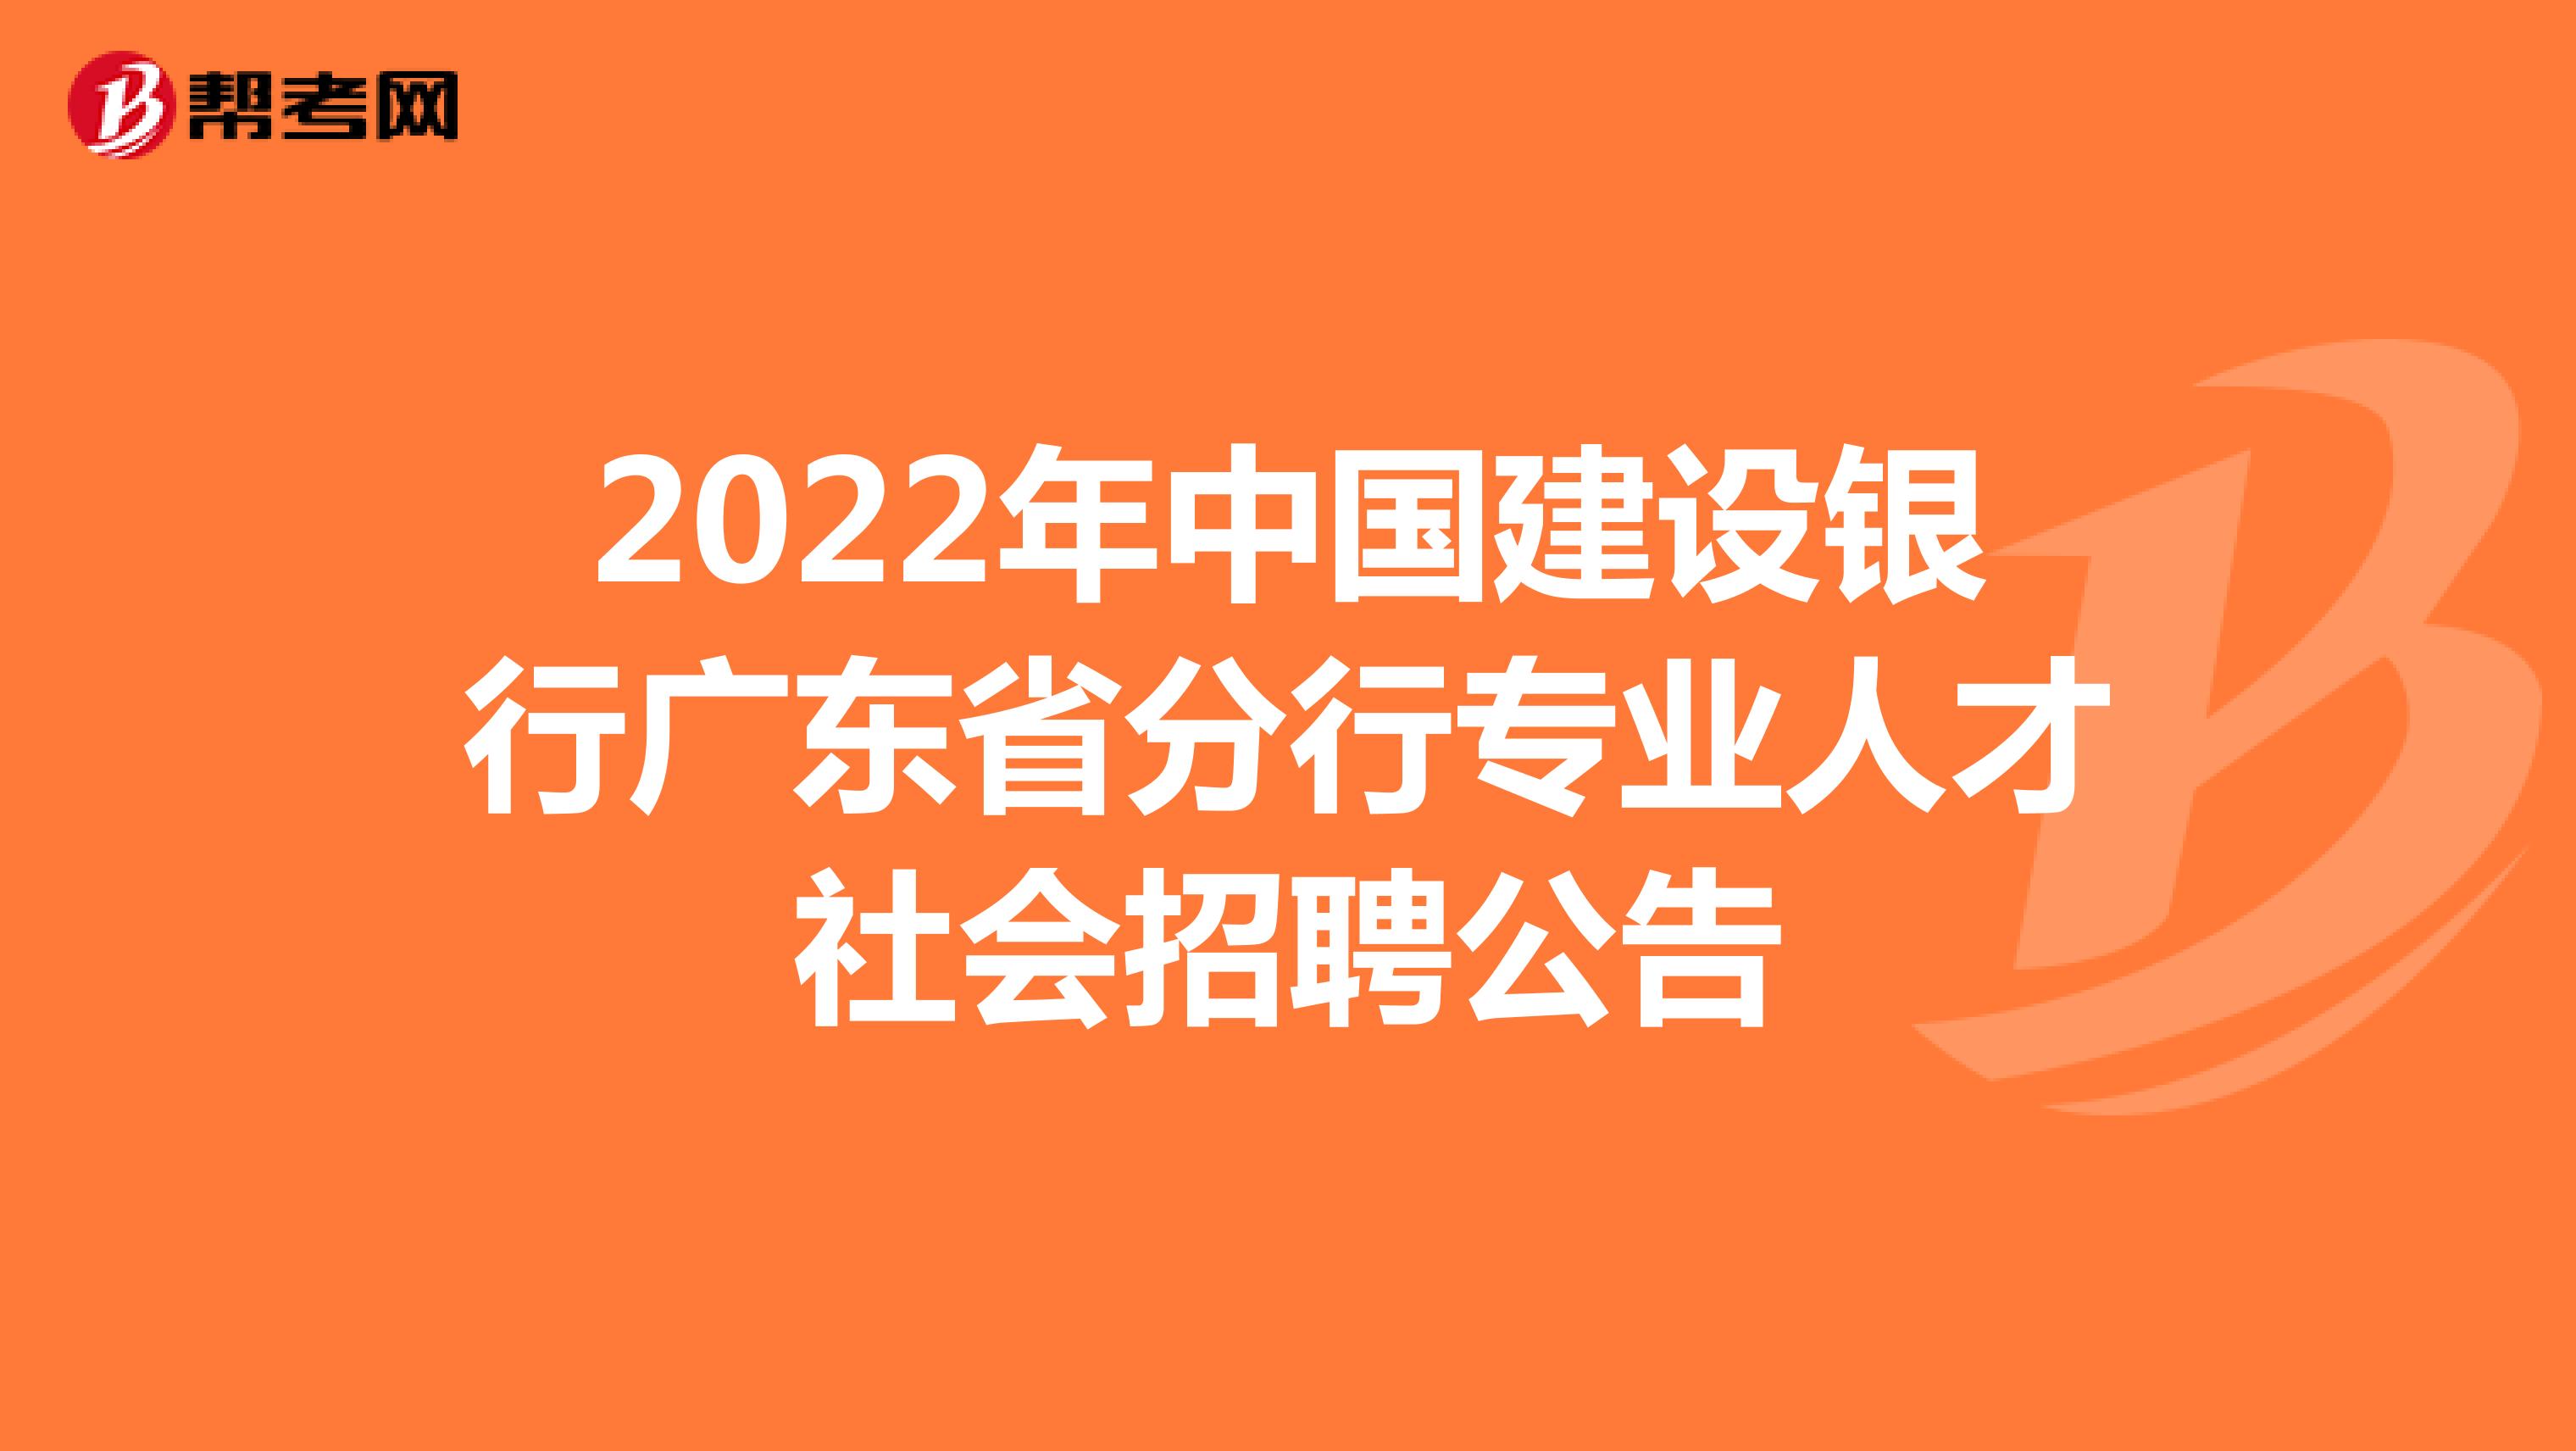 2022年中国建设银行广东省分行专业人才社会招聘公告